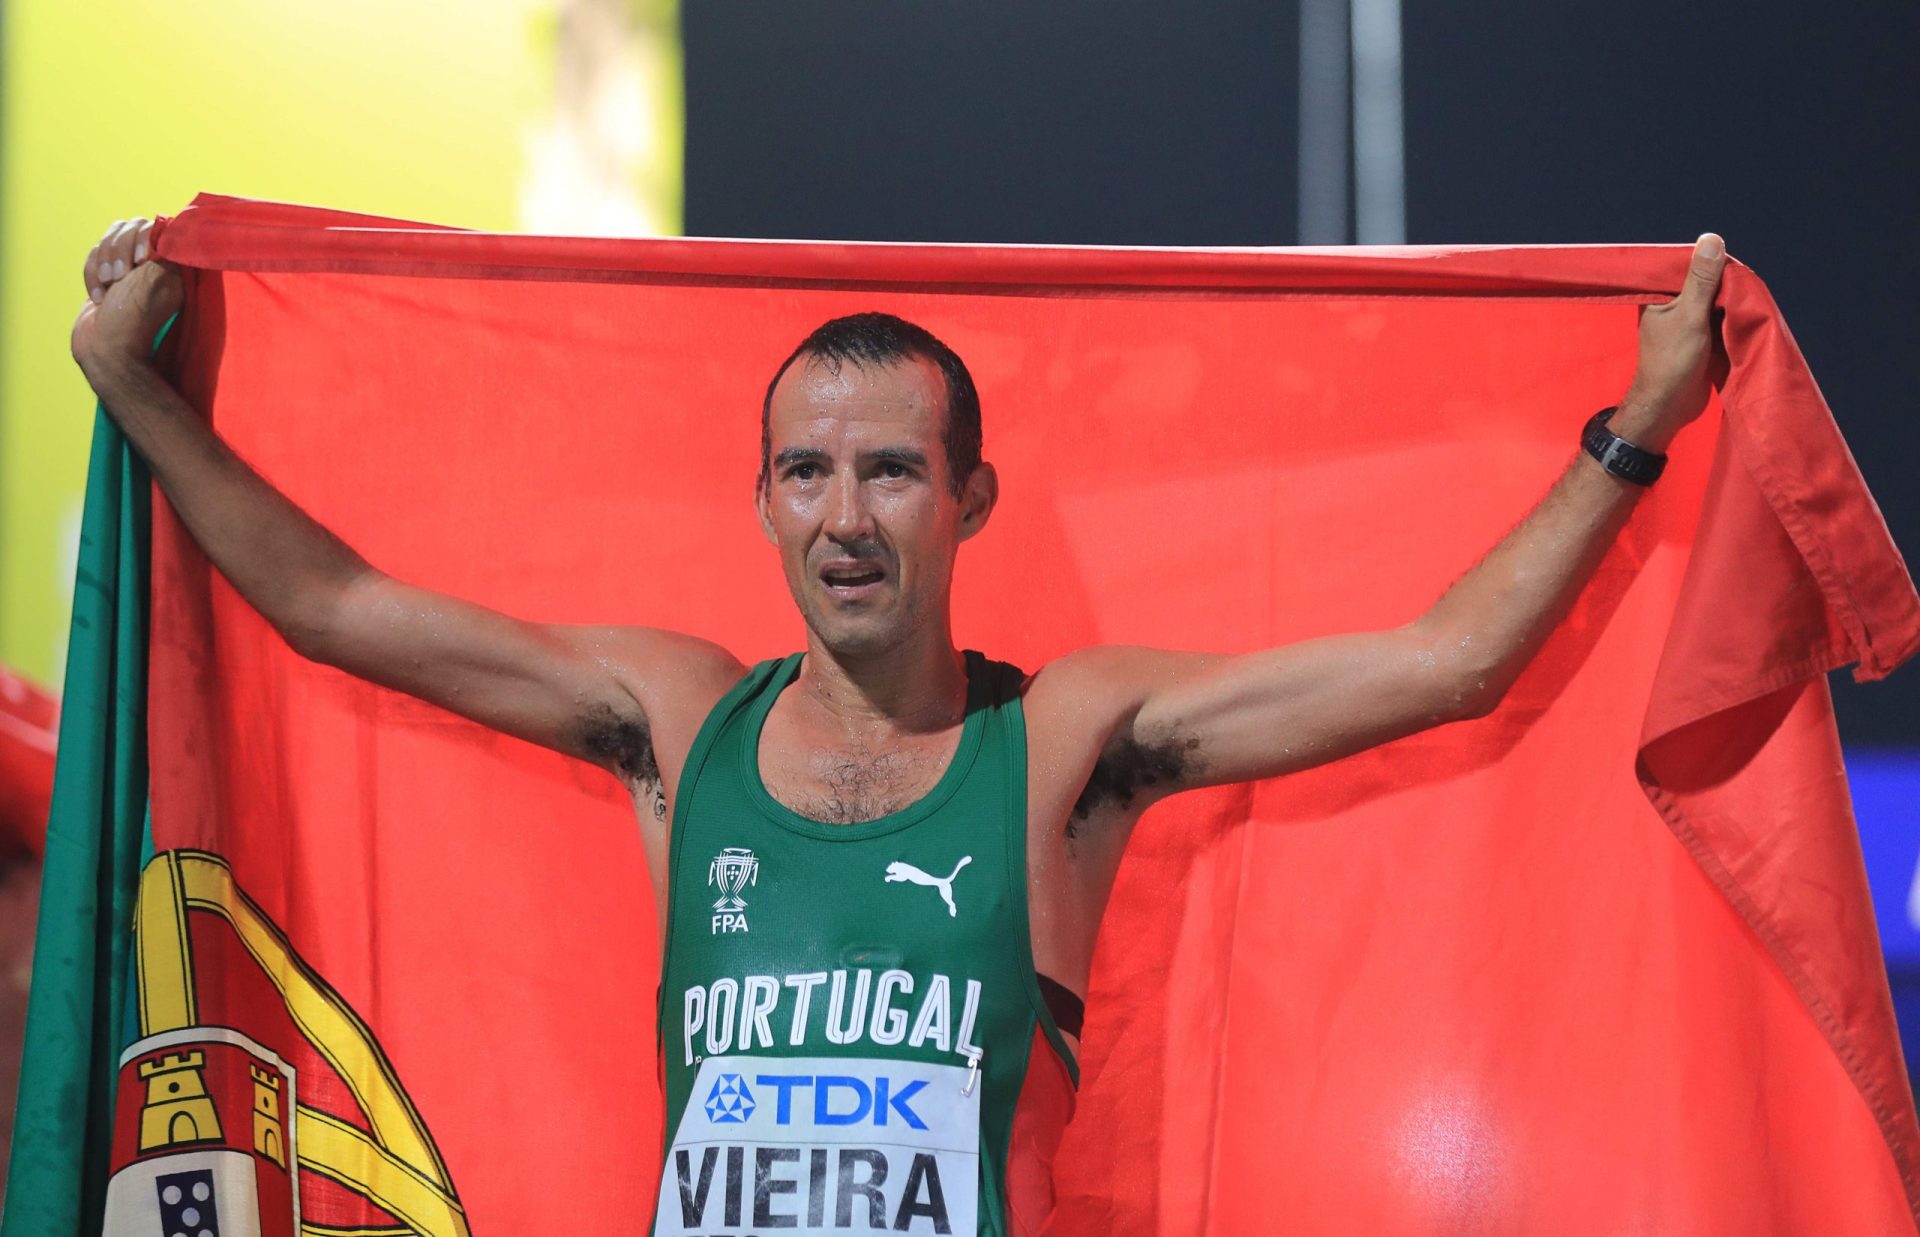 João Vieira faz história ao conquistar medalha de prata nos 50 km marcha no Campeonato do Mundo